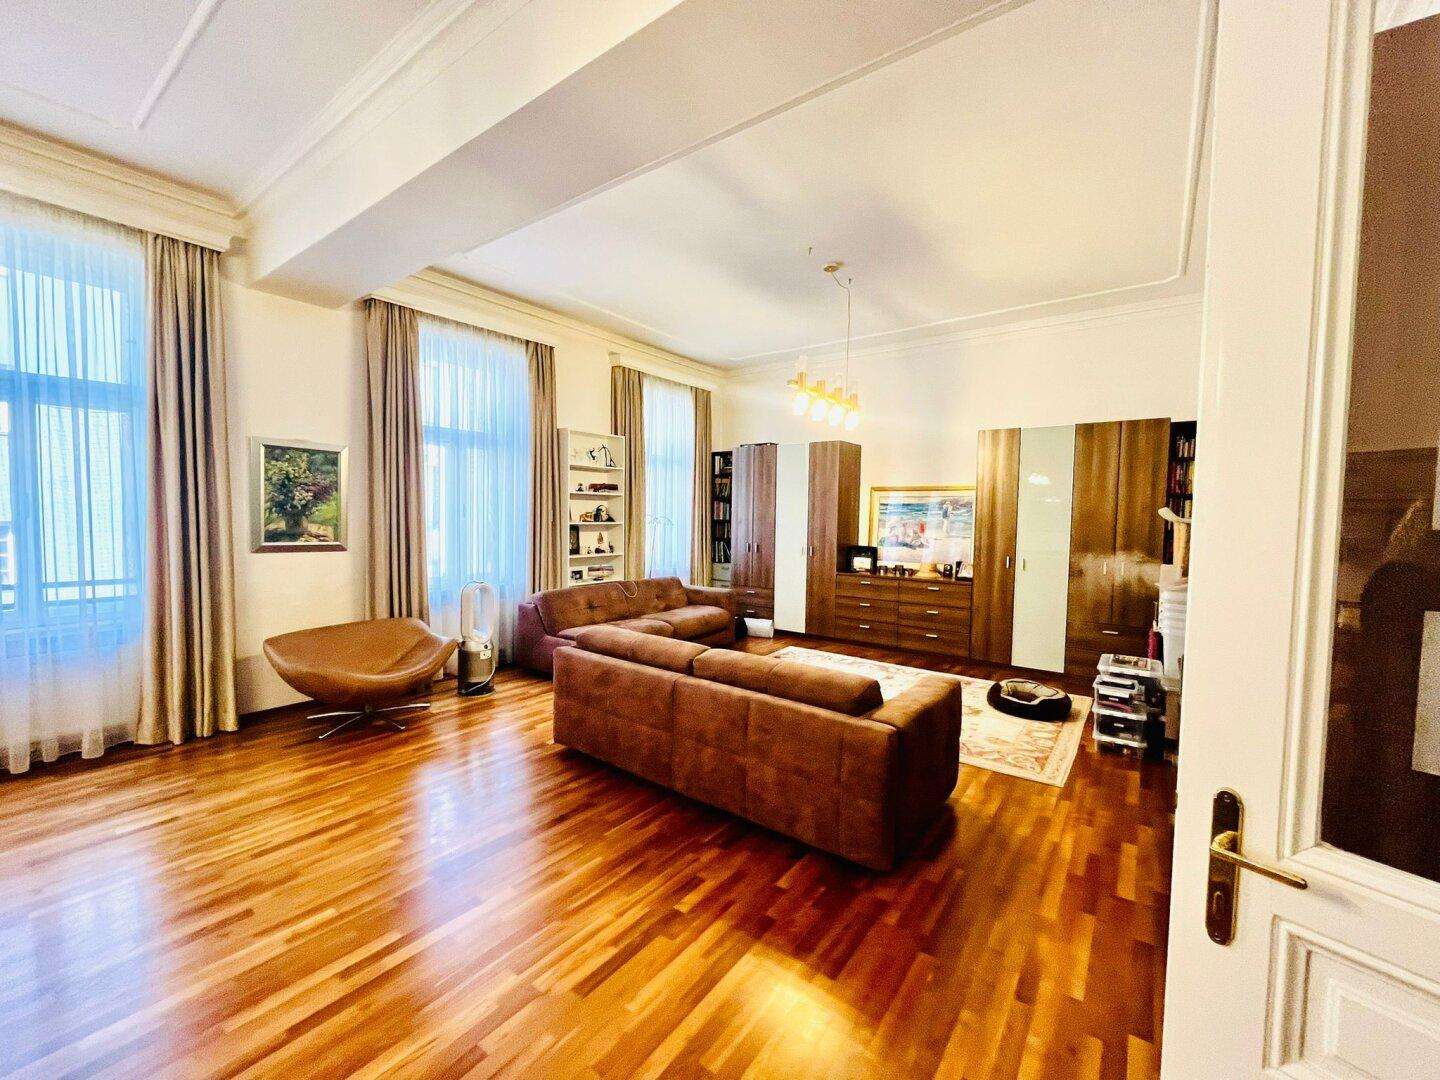 Exklusive 200m² Mietwohnung in Toplage 1080 Wien - Luxuriöses Wohnen mit 4 Zimmern, 4 WCs und 3 Bädern